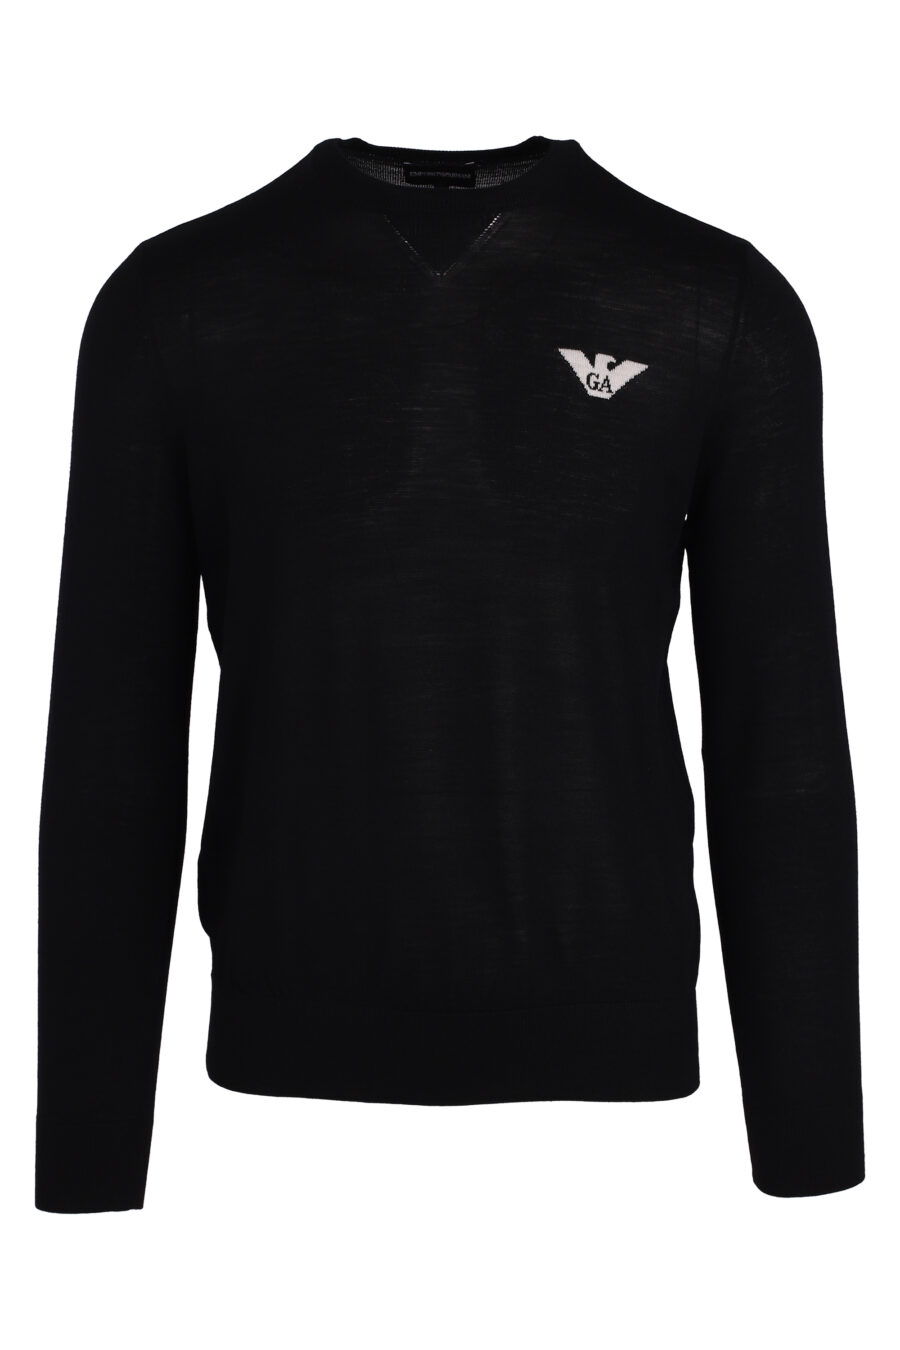 Schwarzer Pullover mit weißem Adler-Logo - IMG 4734